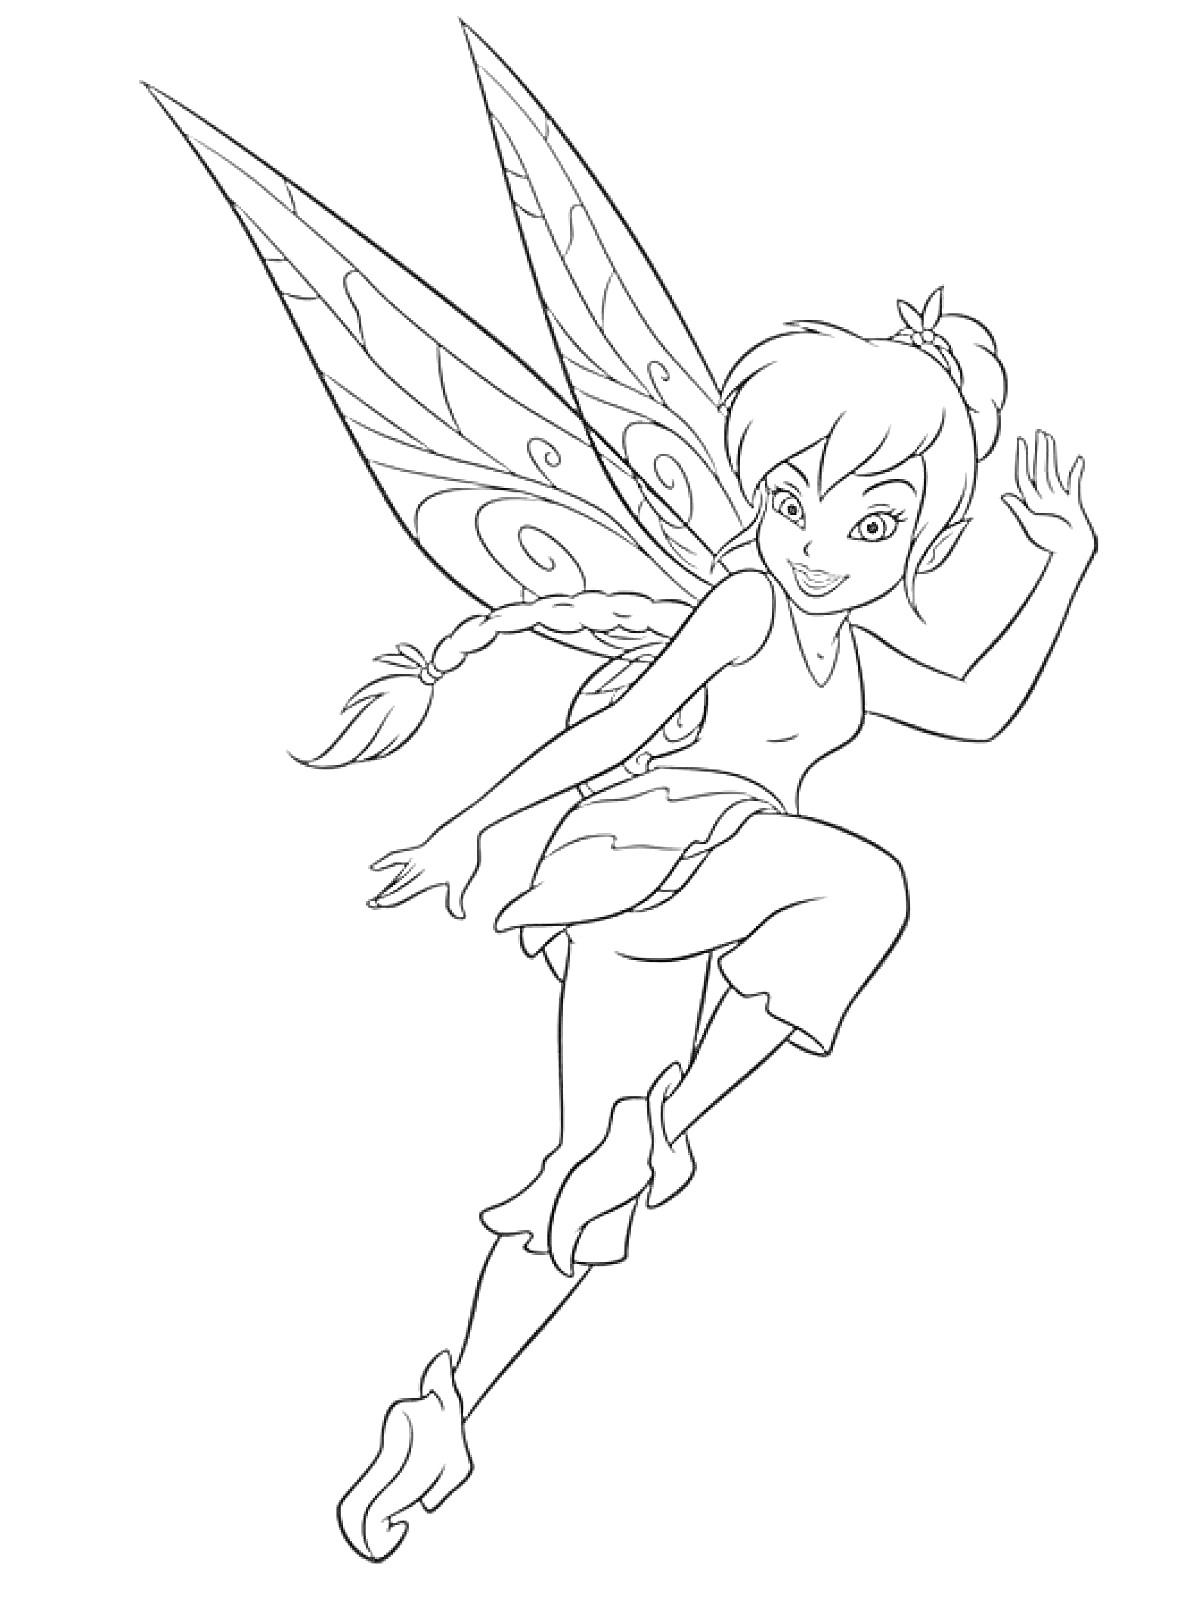 Раскраска Фея Динь-Динь с длинной косичкой, поднимающая руку вверх, на лету в воздушной позе с изящными крыльями